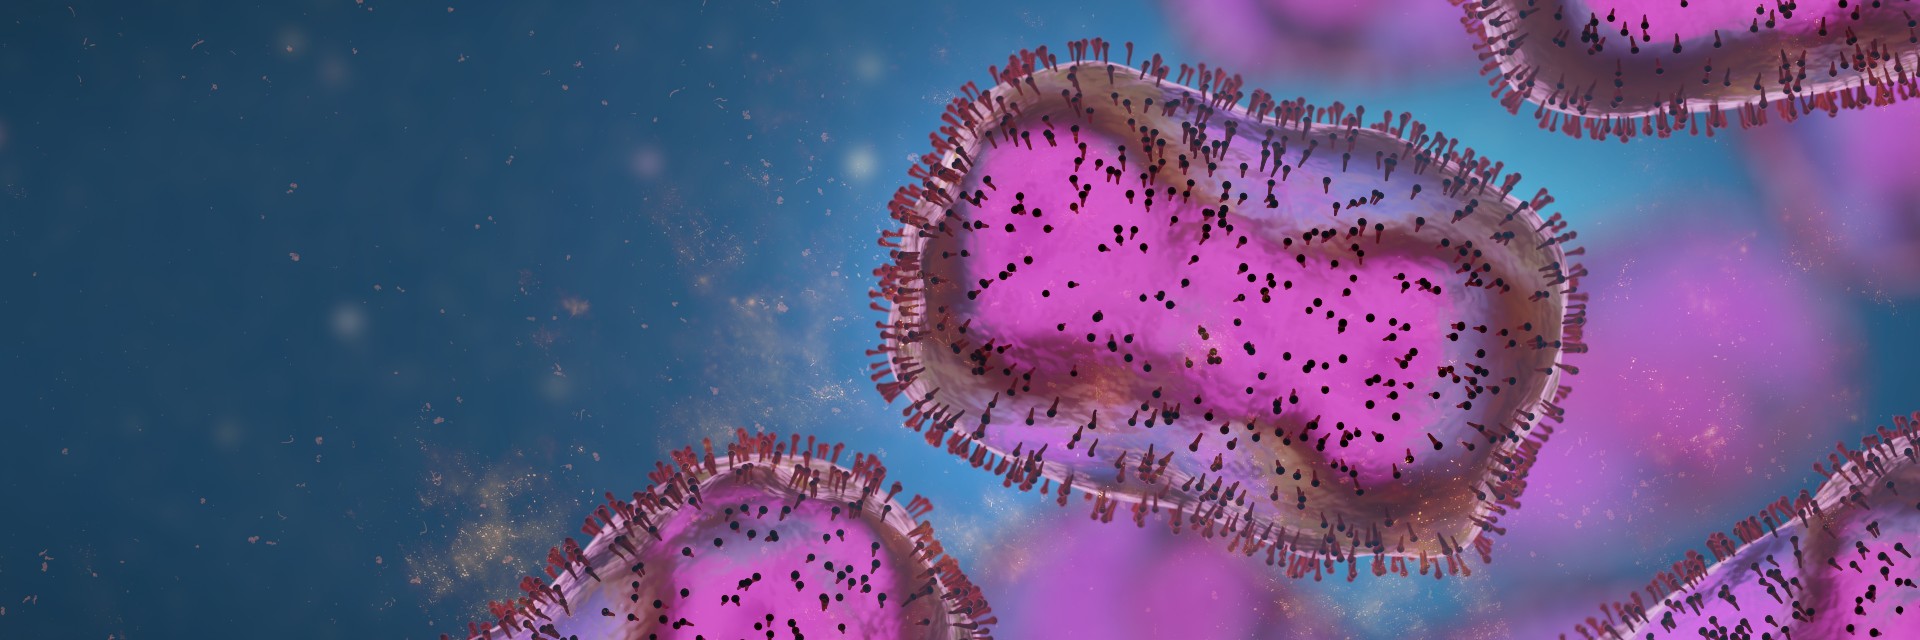 La&nbsp;variole du singe continue sa progression&nbsp;dans le monde. © dottedyeti, Adobe Stock